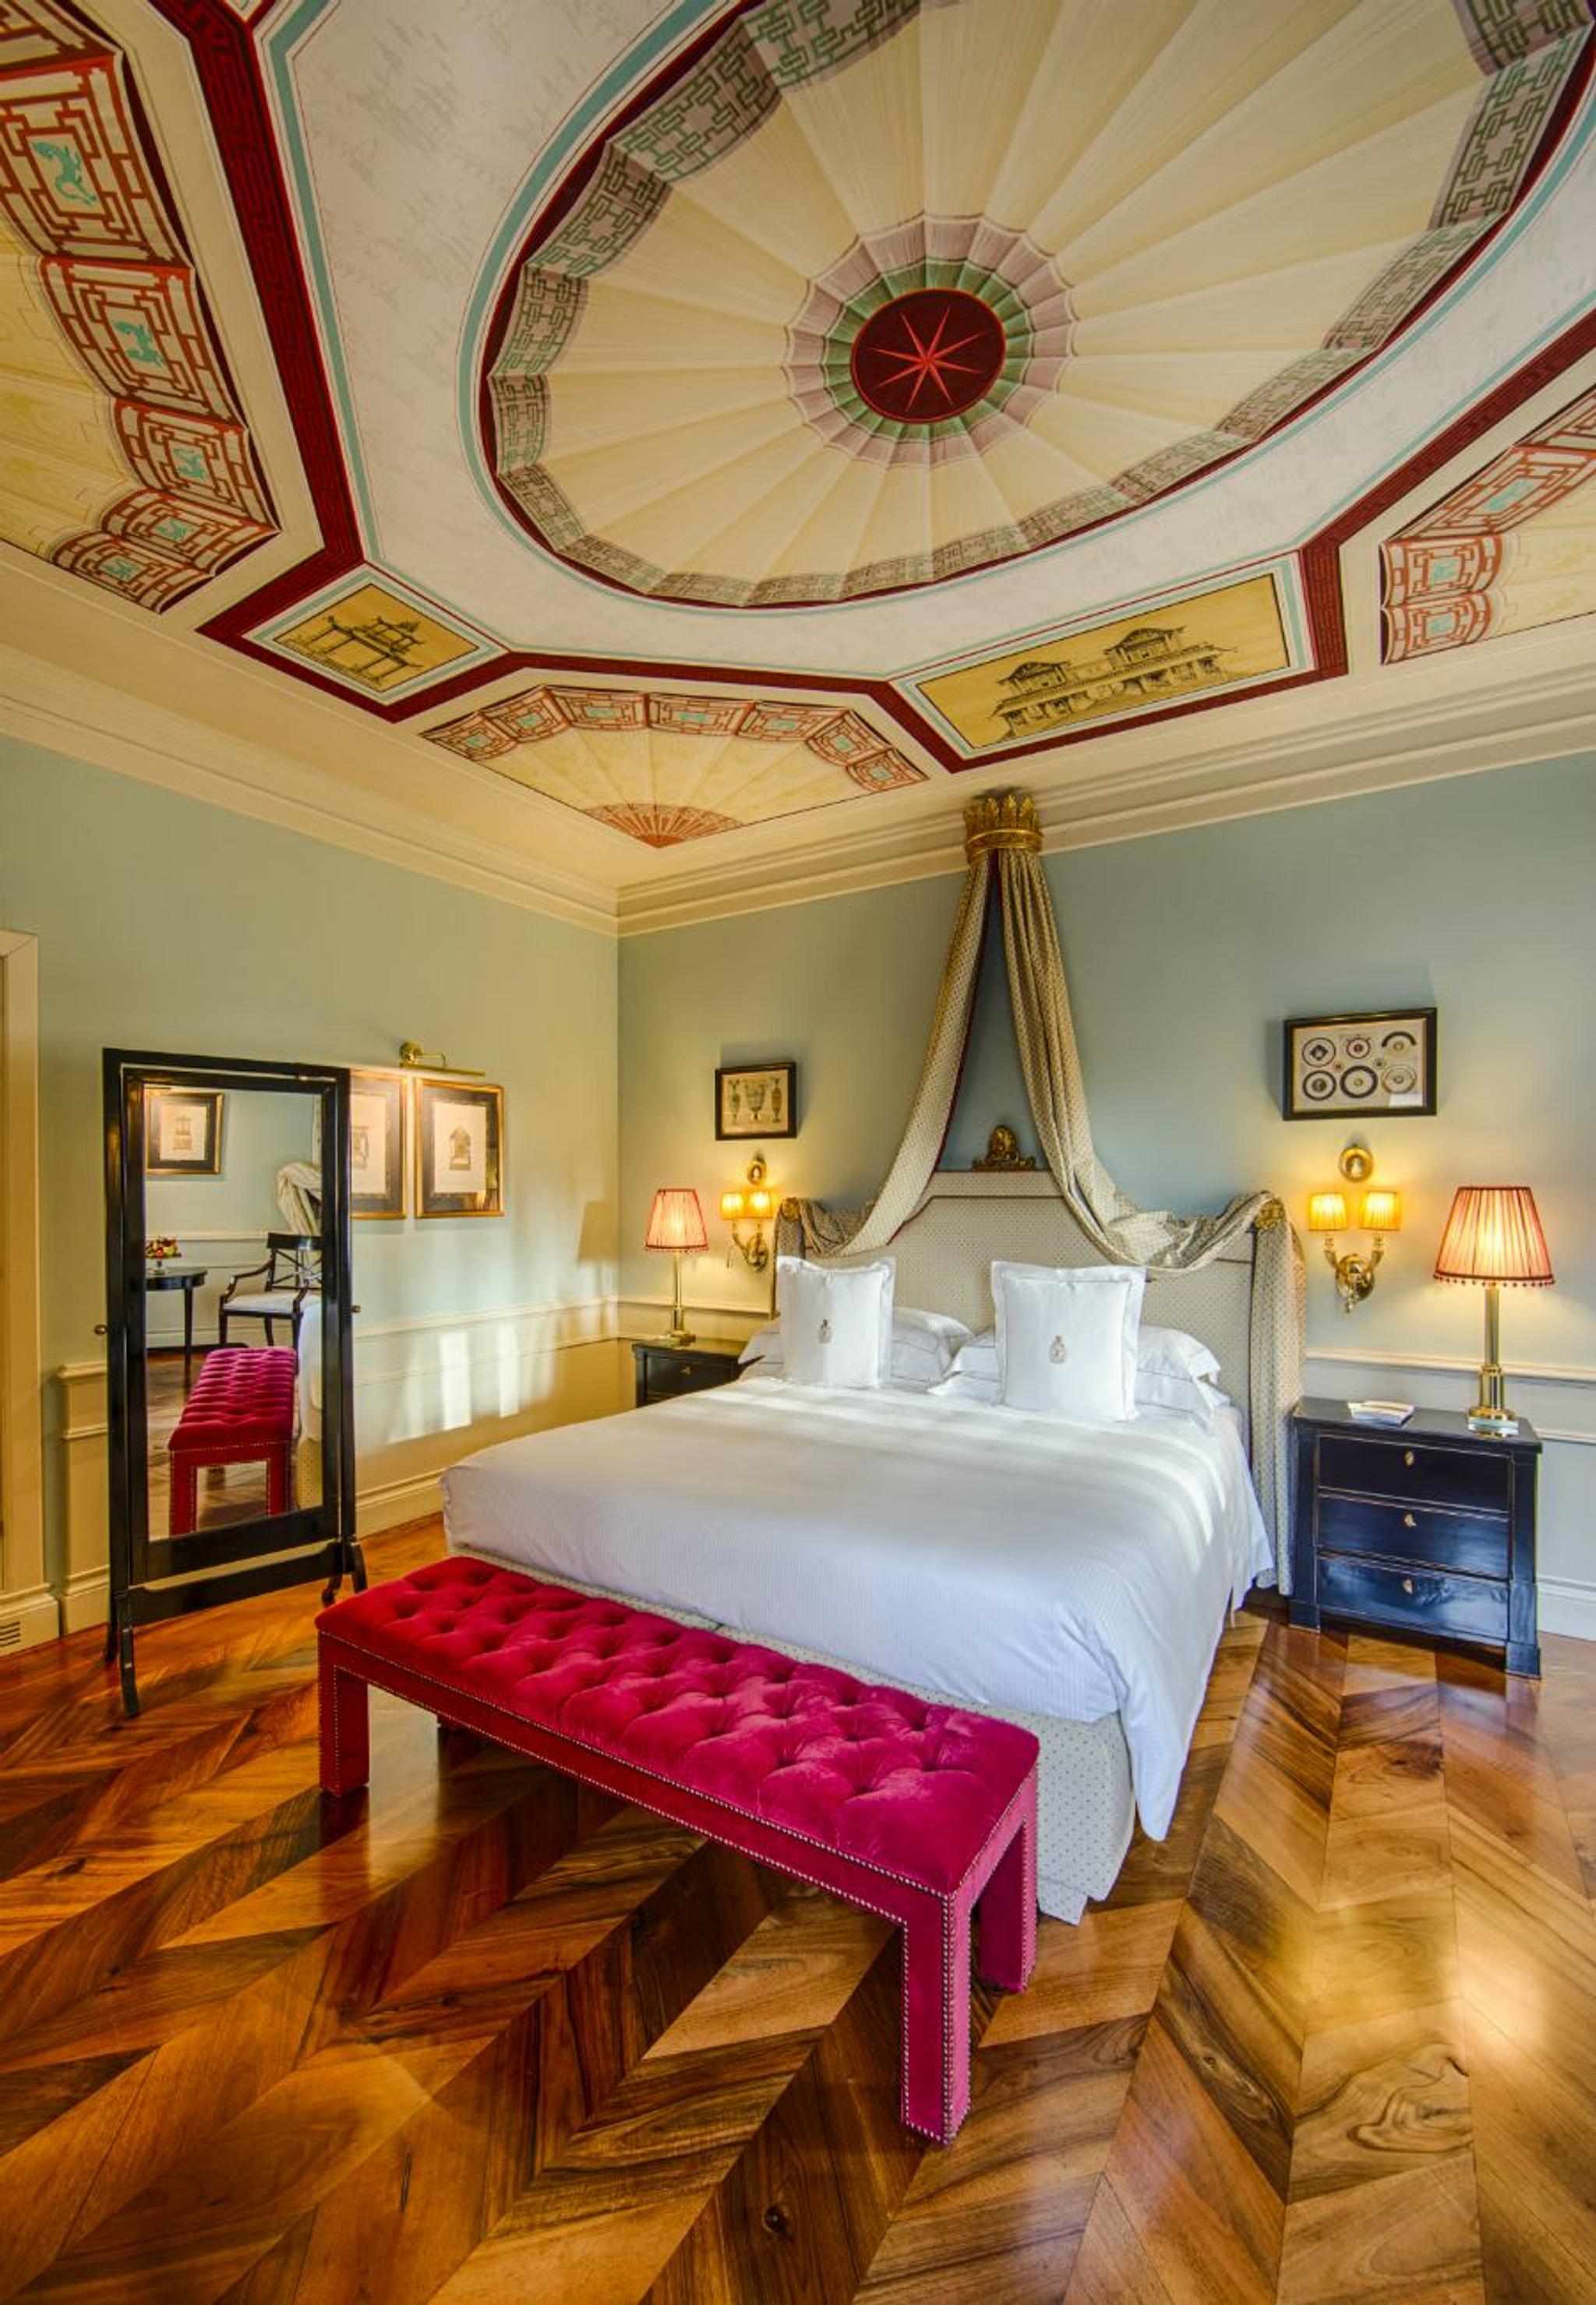 Hermosos techos con frescos y un banco de terciopelo rosa brillante hacen que esta habitación Deluxe sea exquisita.